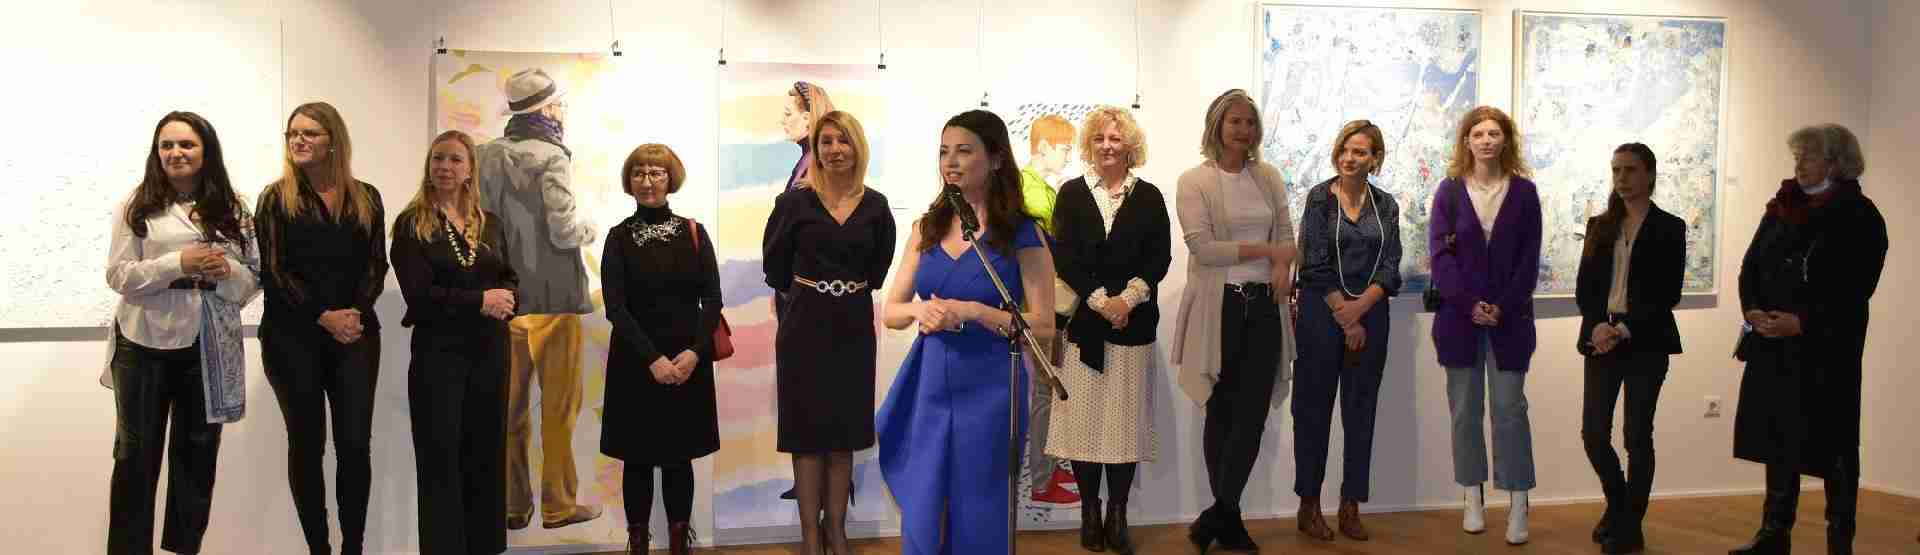 Hagyományos nőhónapi képzőművészeti kiállítás és rendezvénysorozat Zágrábban a Nemzetközi Női Klubbal együttműködésben